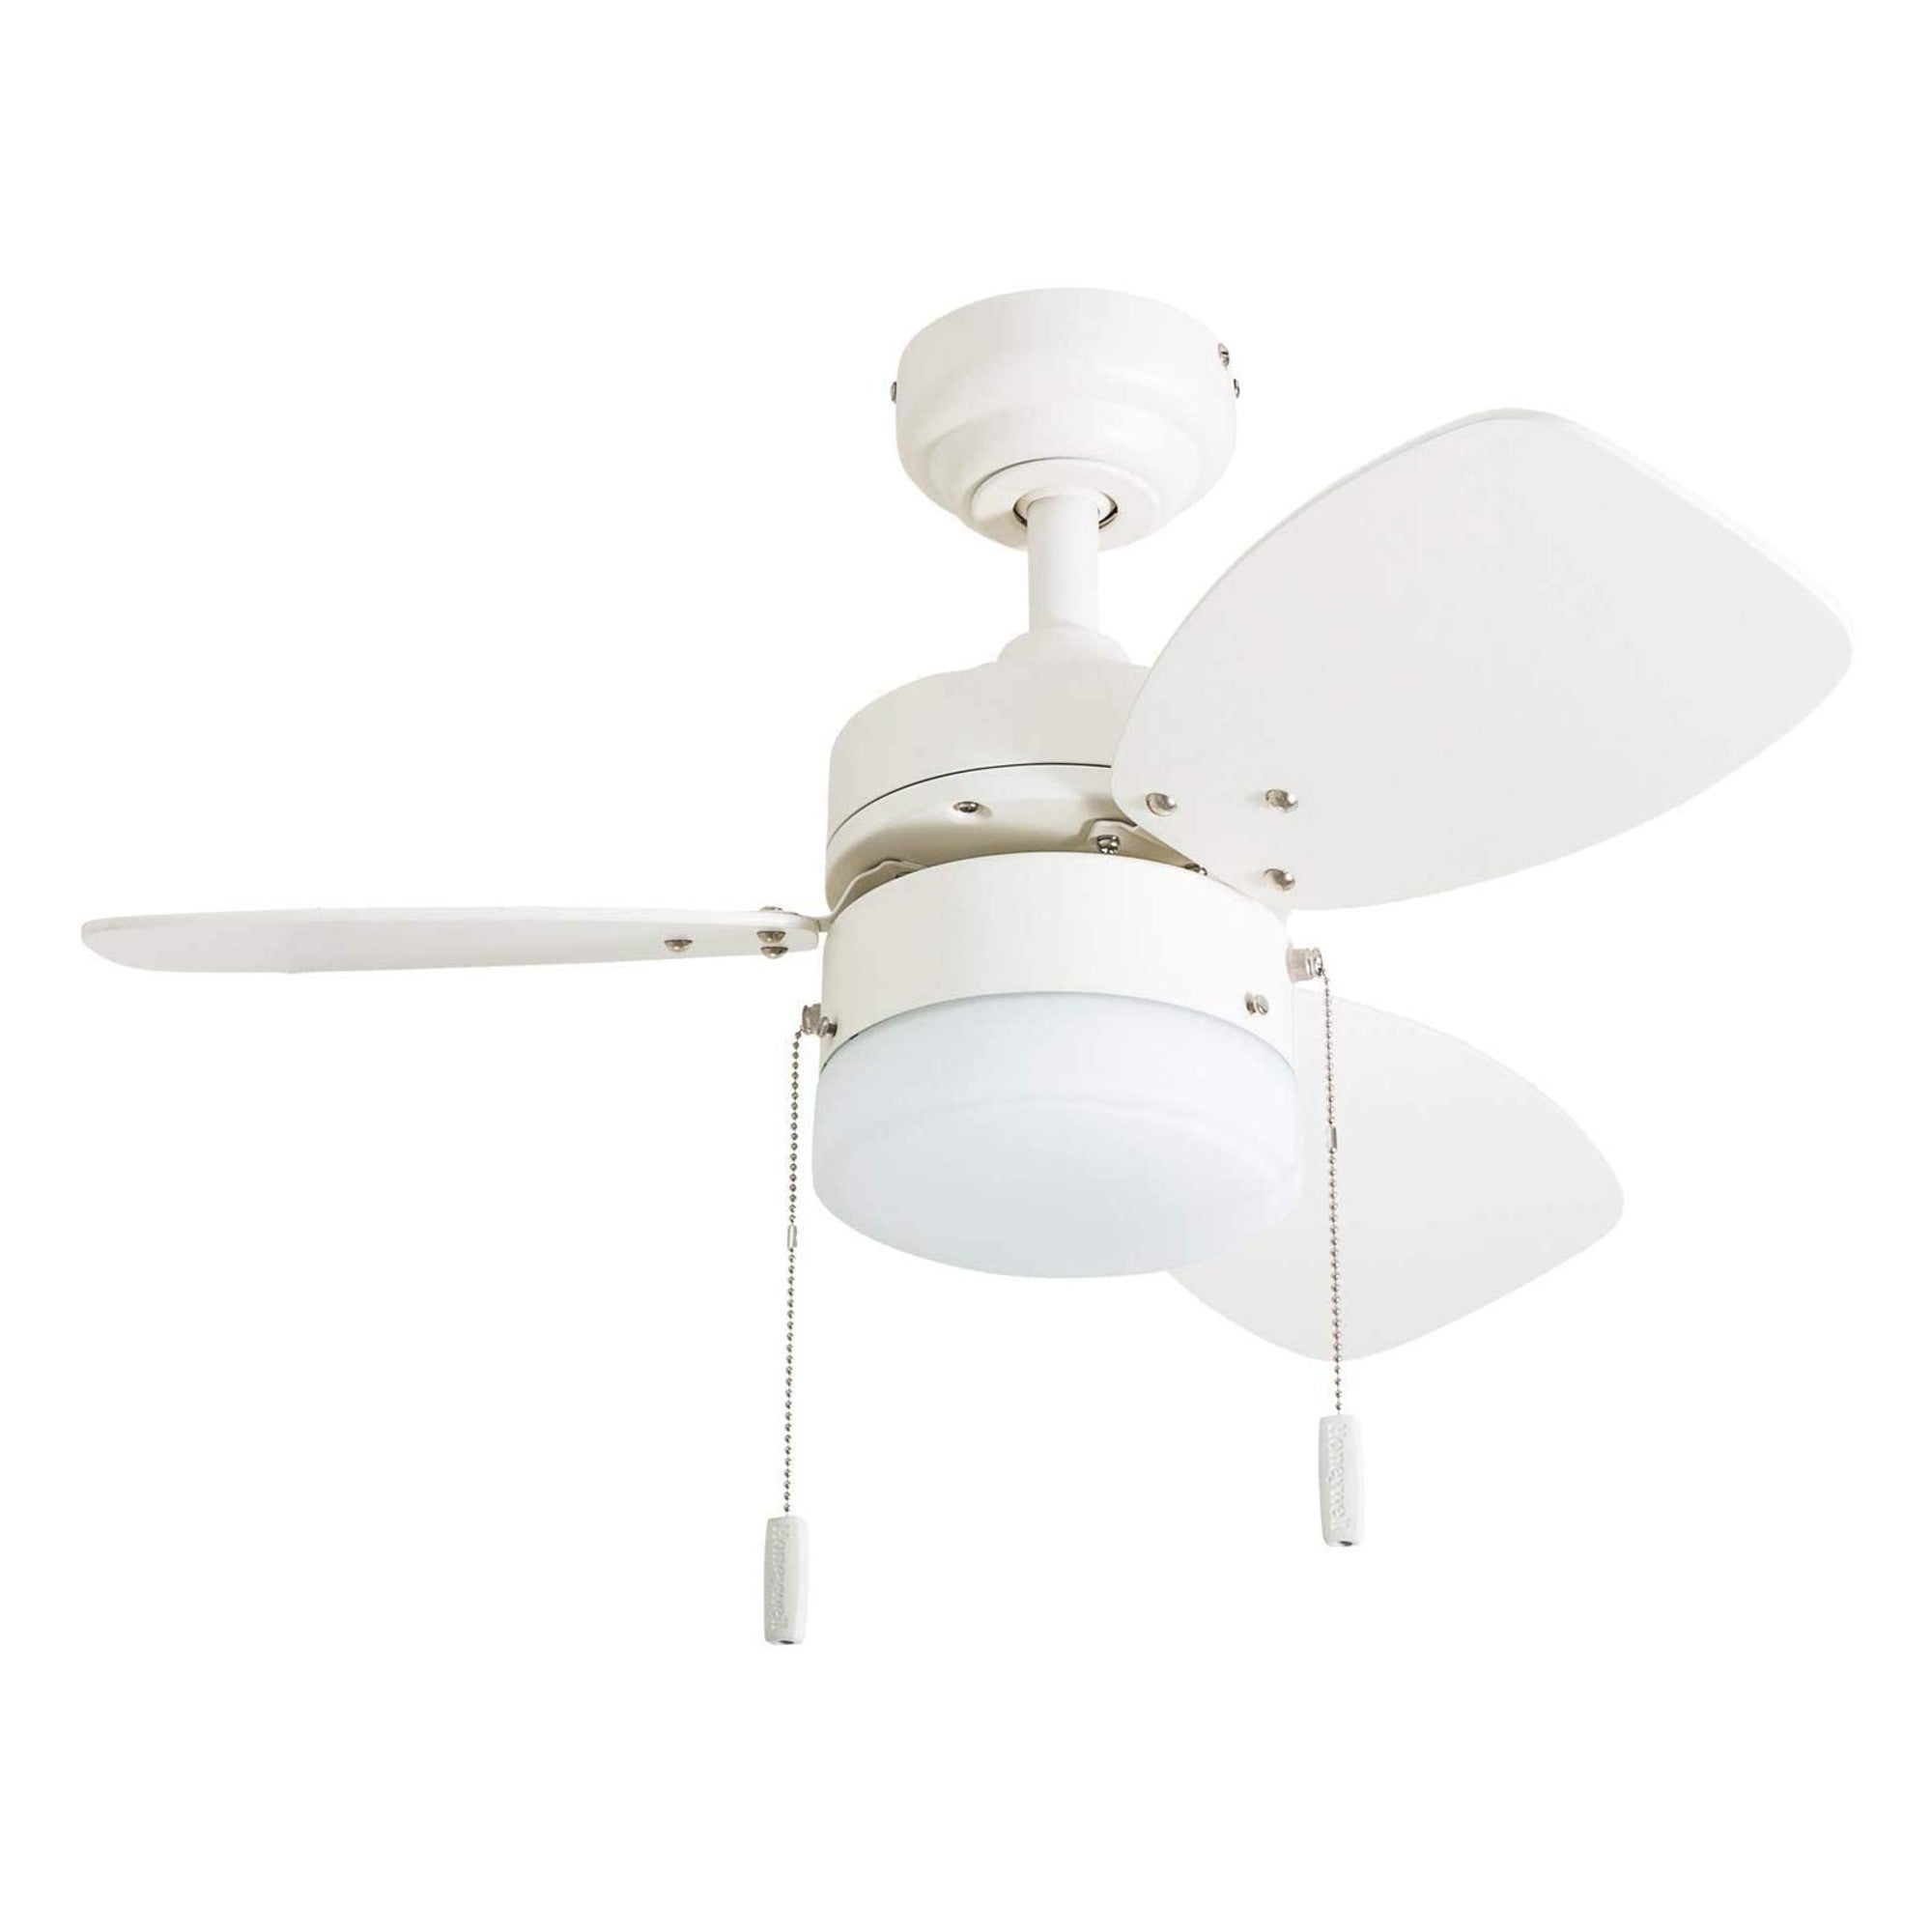 Honeywell Ocean Breeze Ceiling Fan